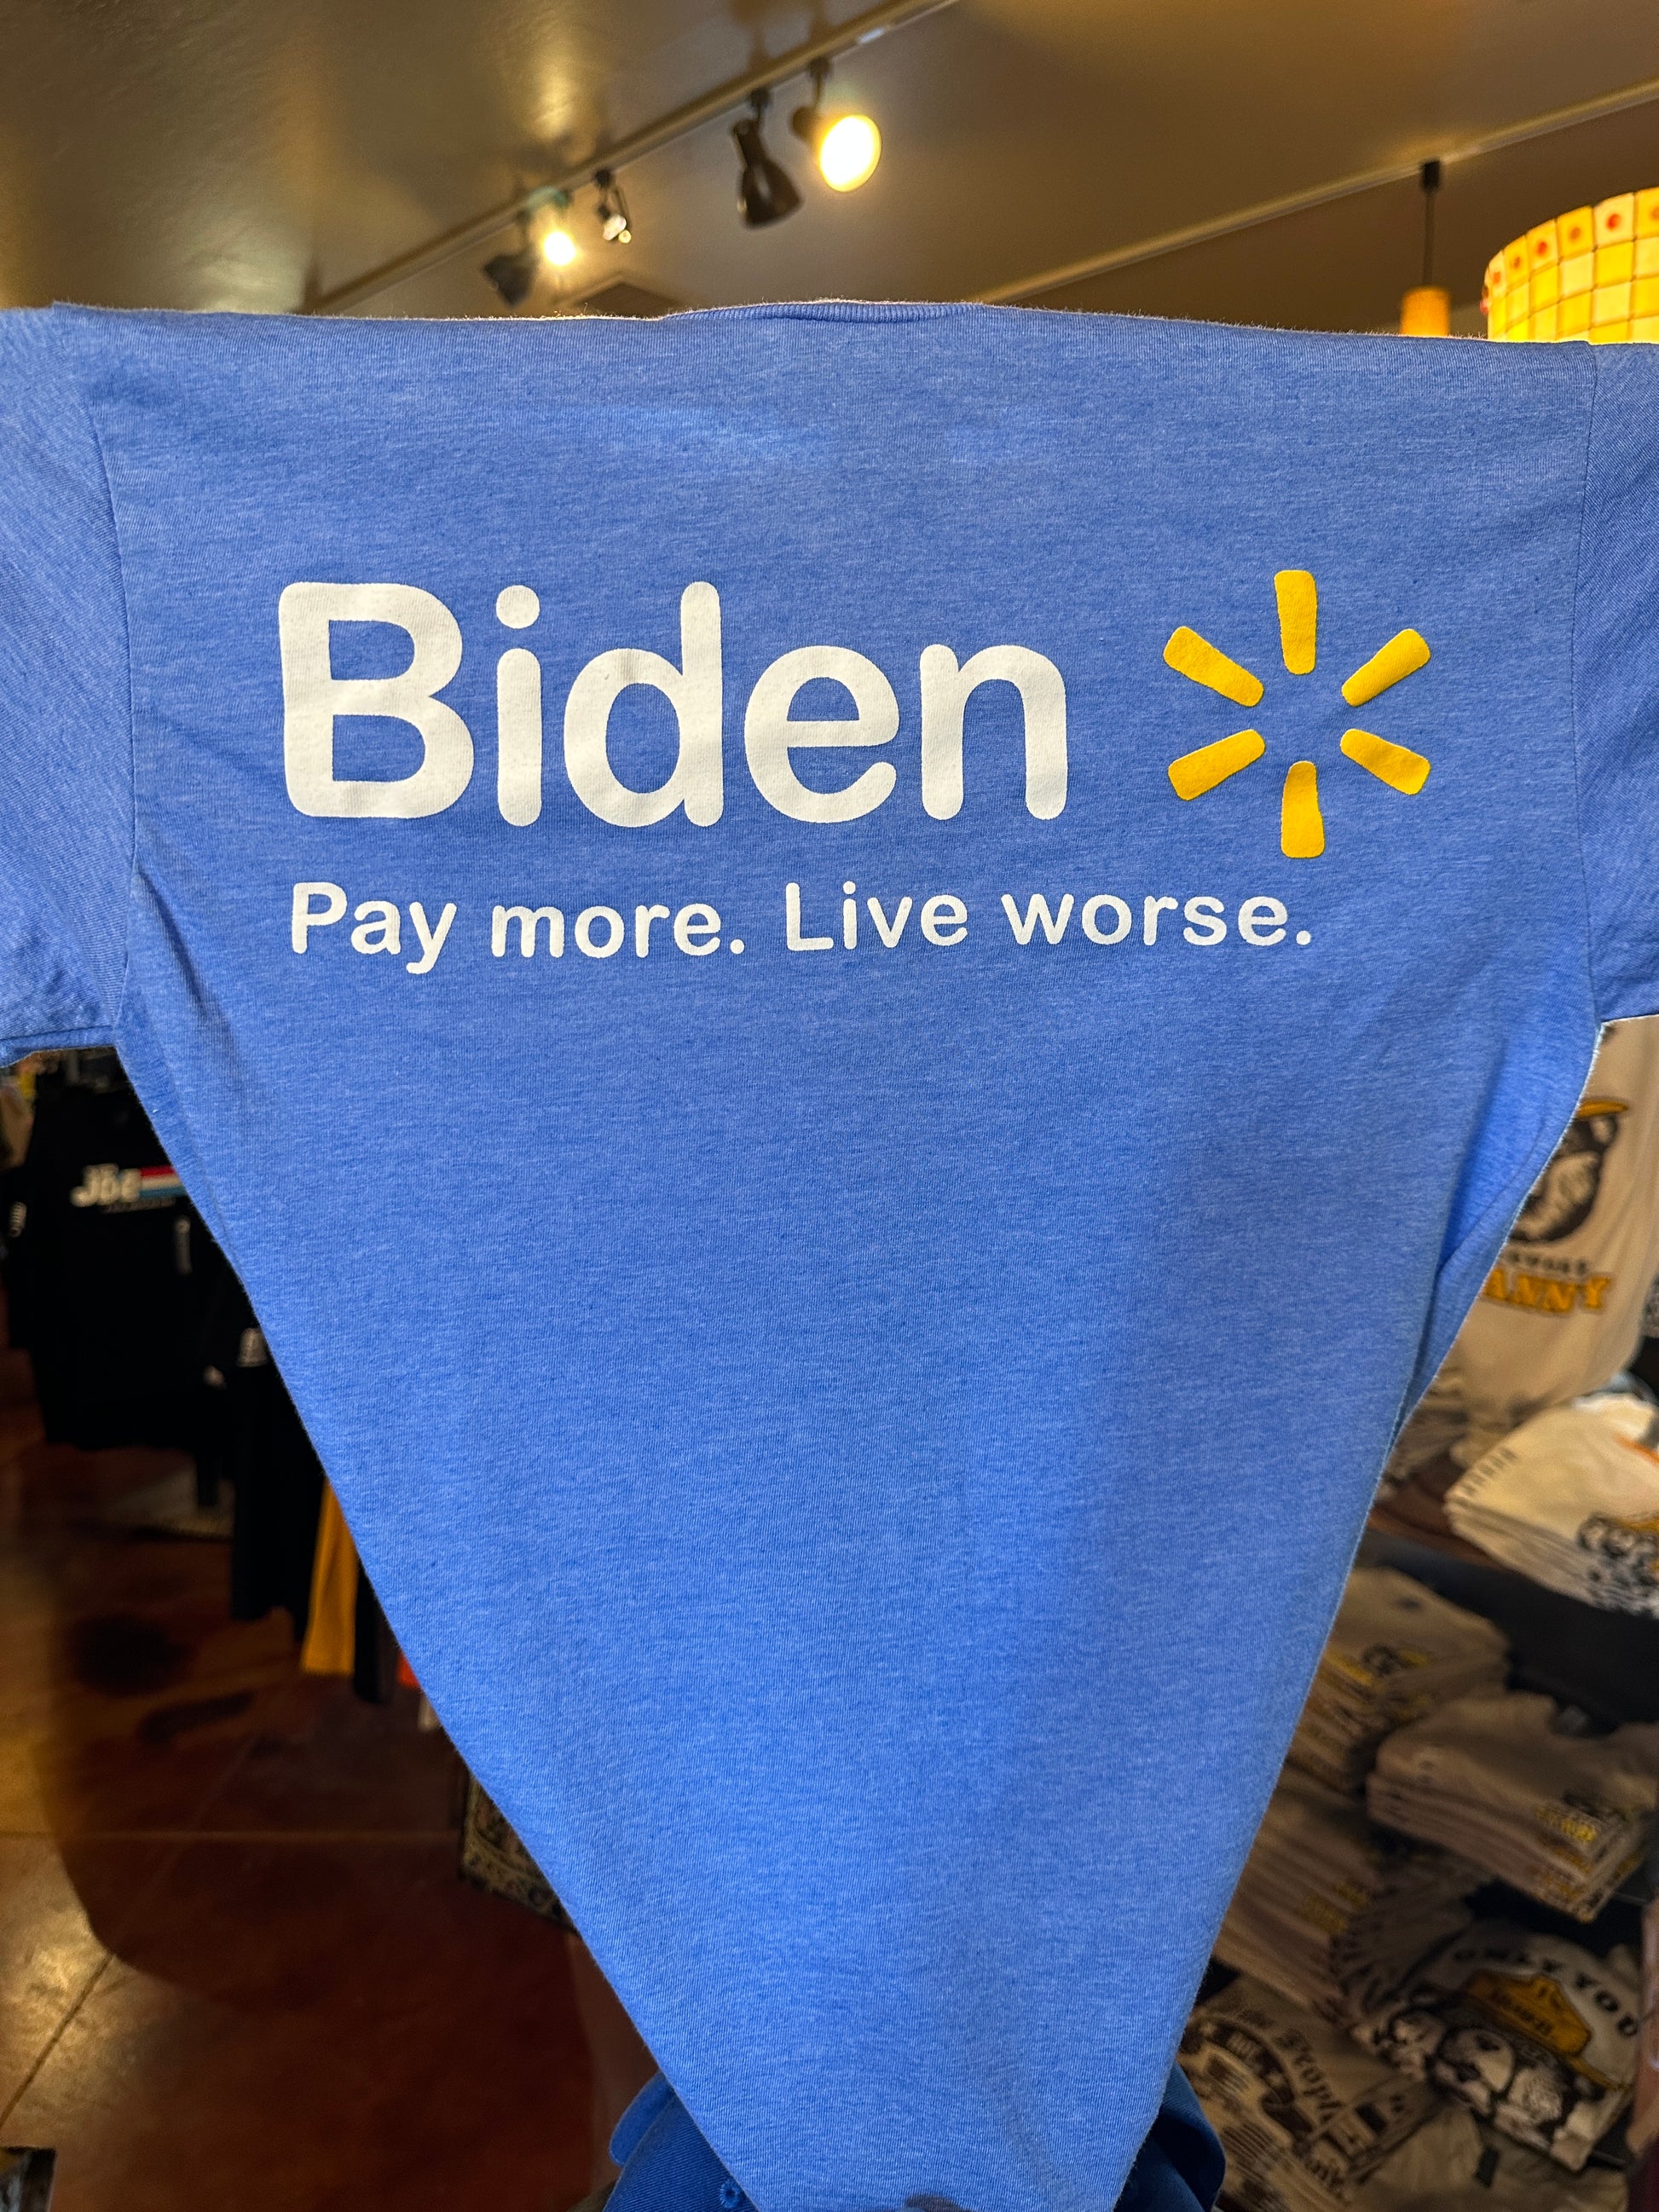 Biden parody shirt closeup